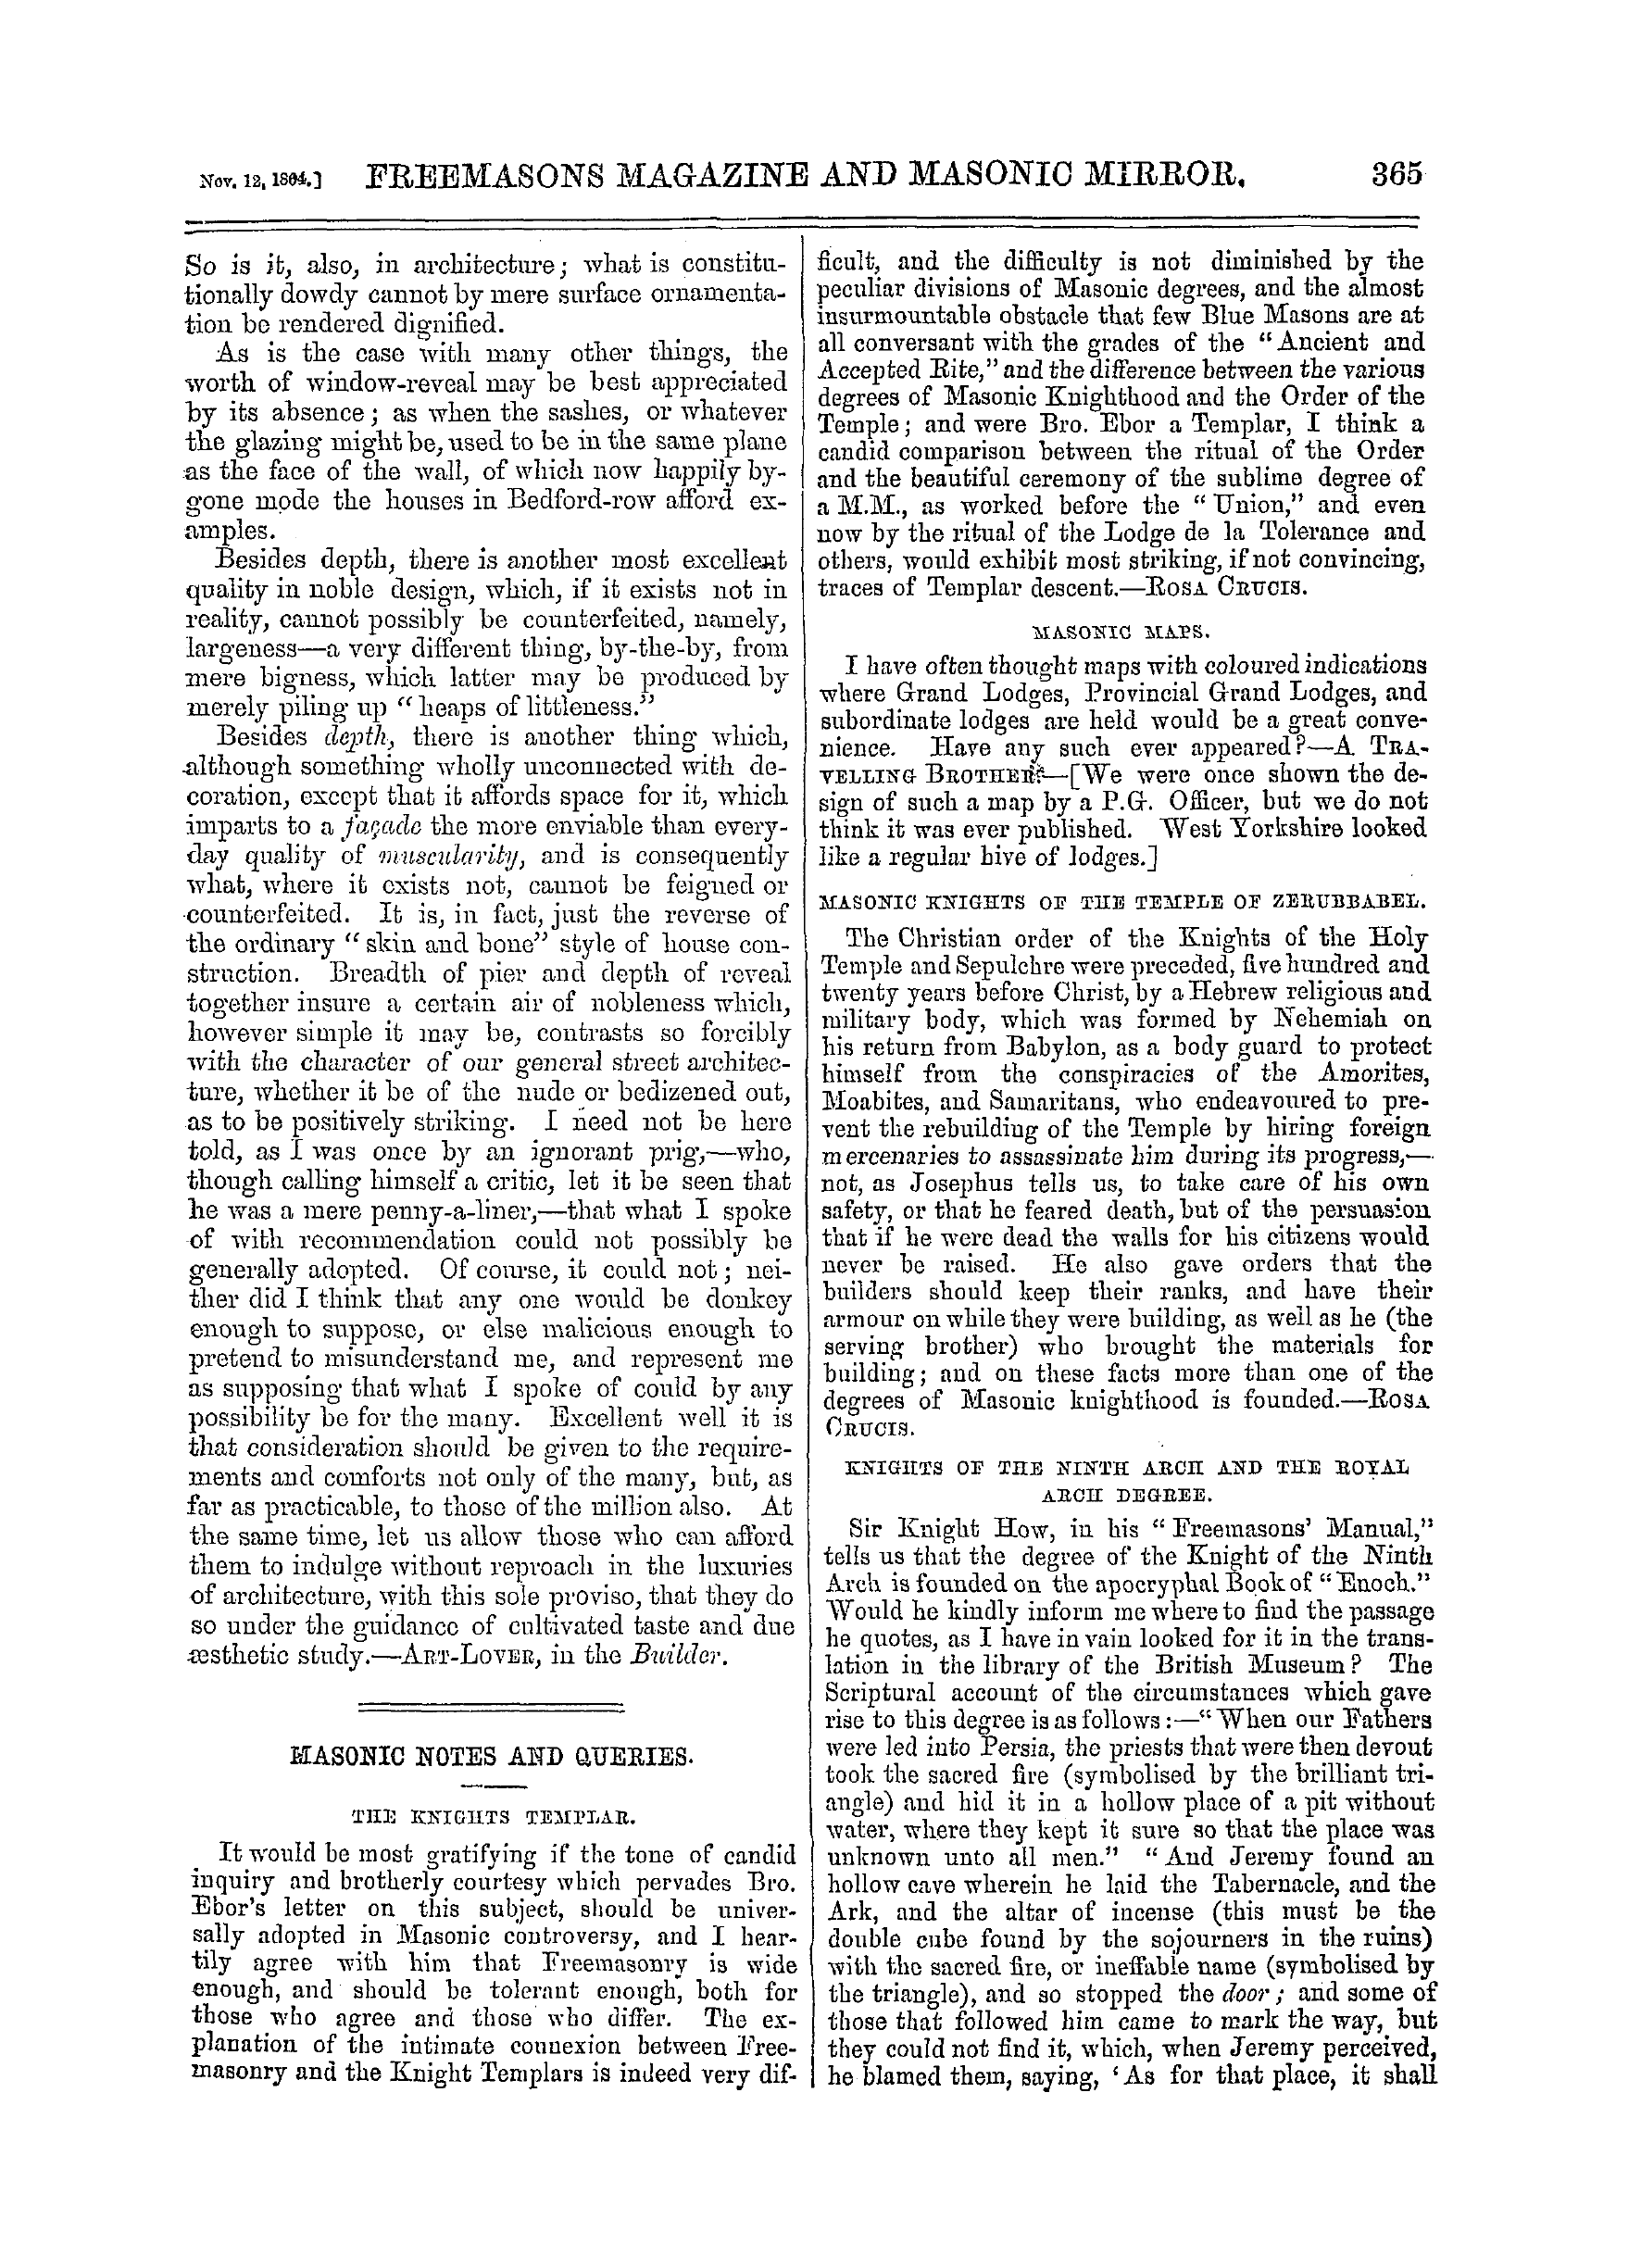 The Freemasons' Monthly Magazine: 1864-11-12: 5